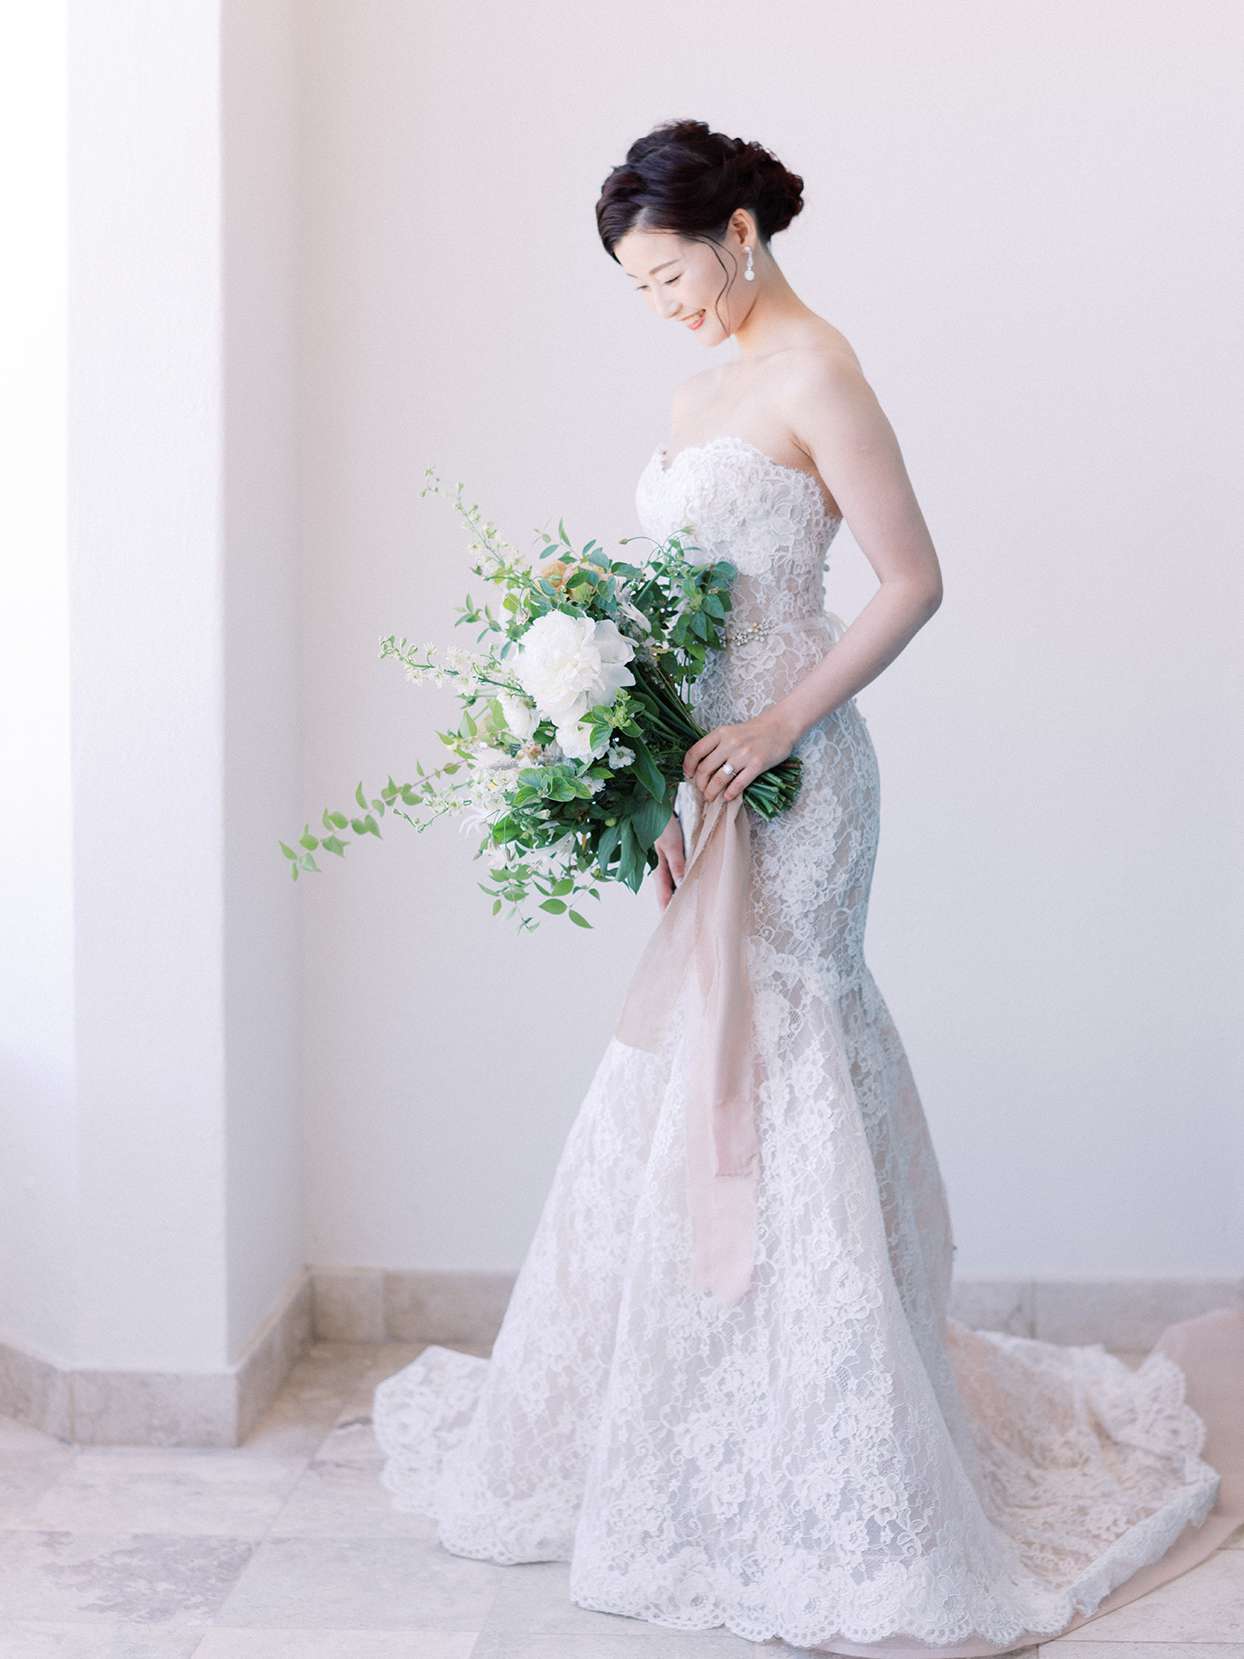 kirsten deran wedding bride in lace overlay gown